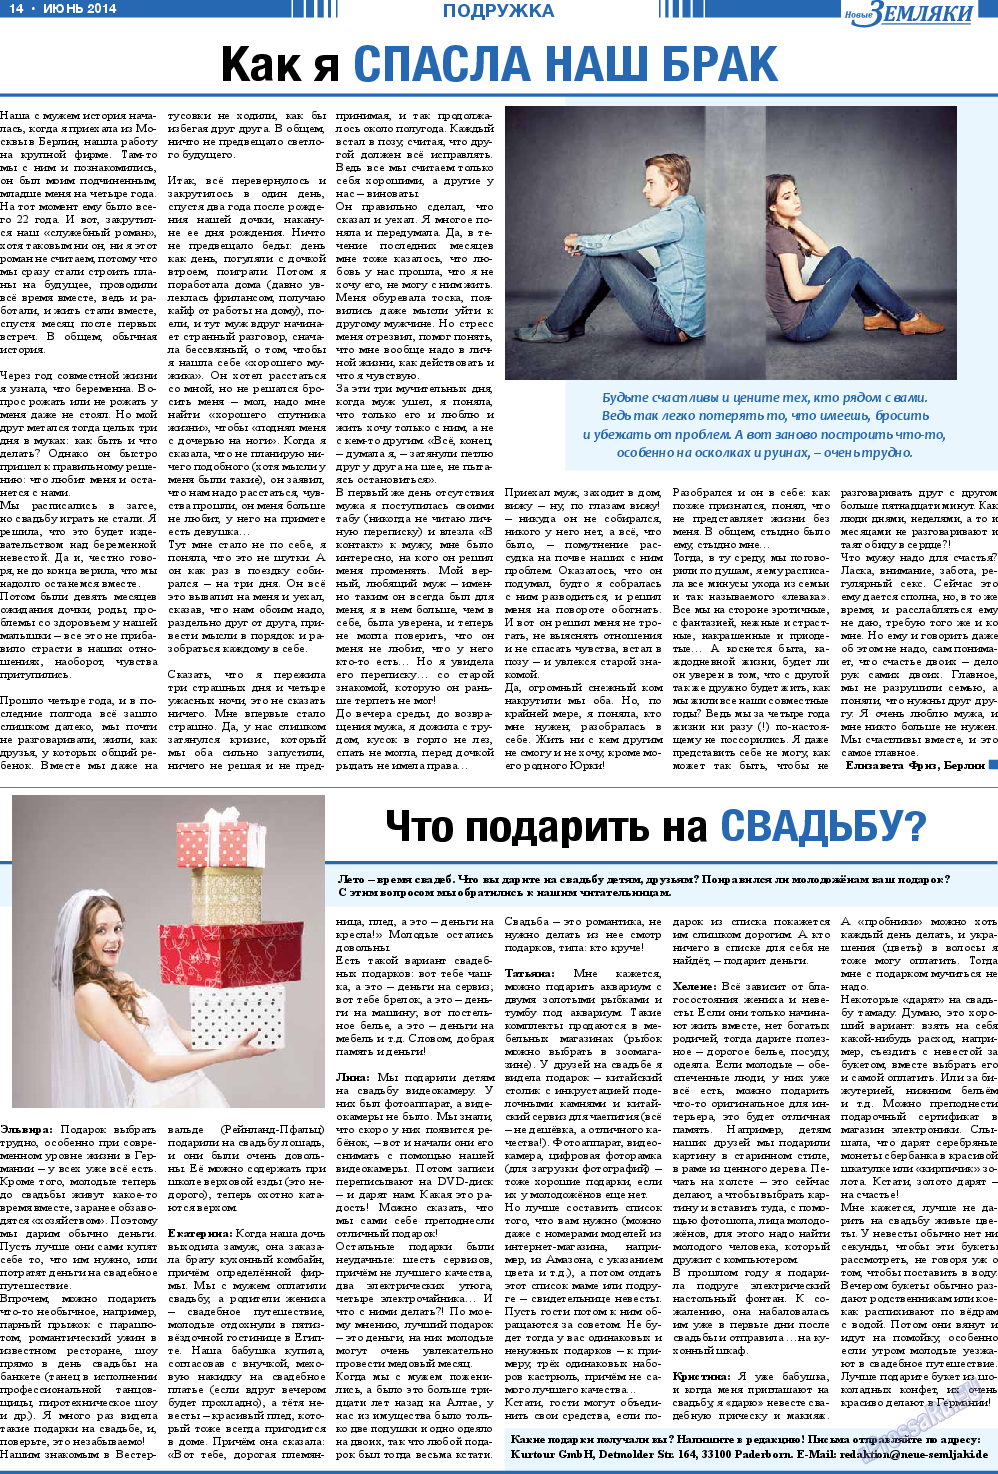 Новые Земляки, газета. 2014 №6 стр.14